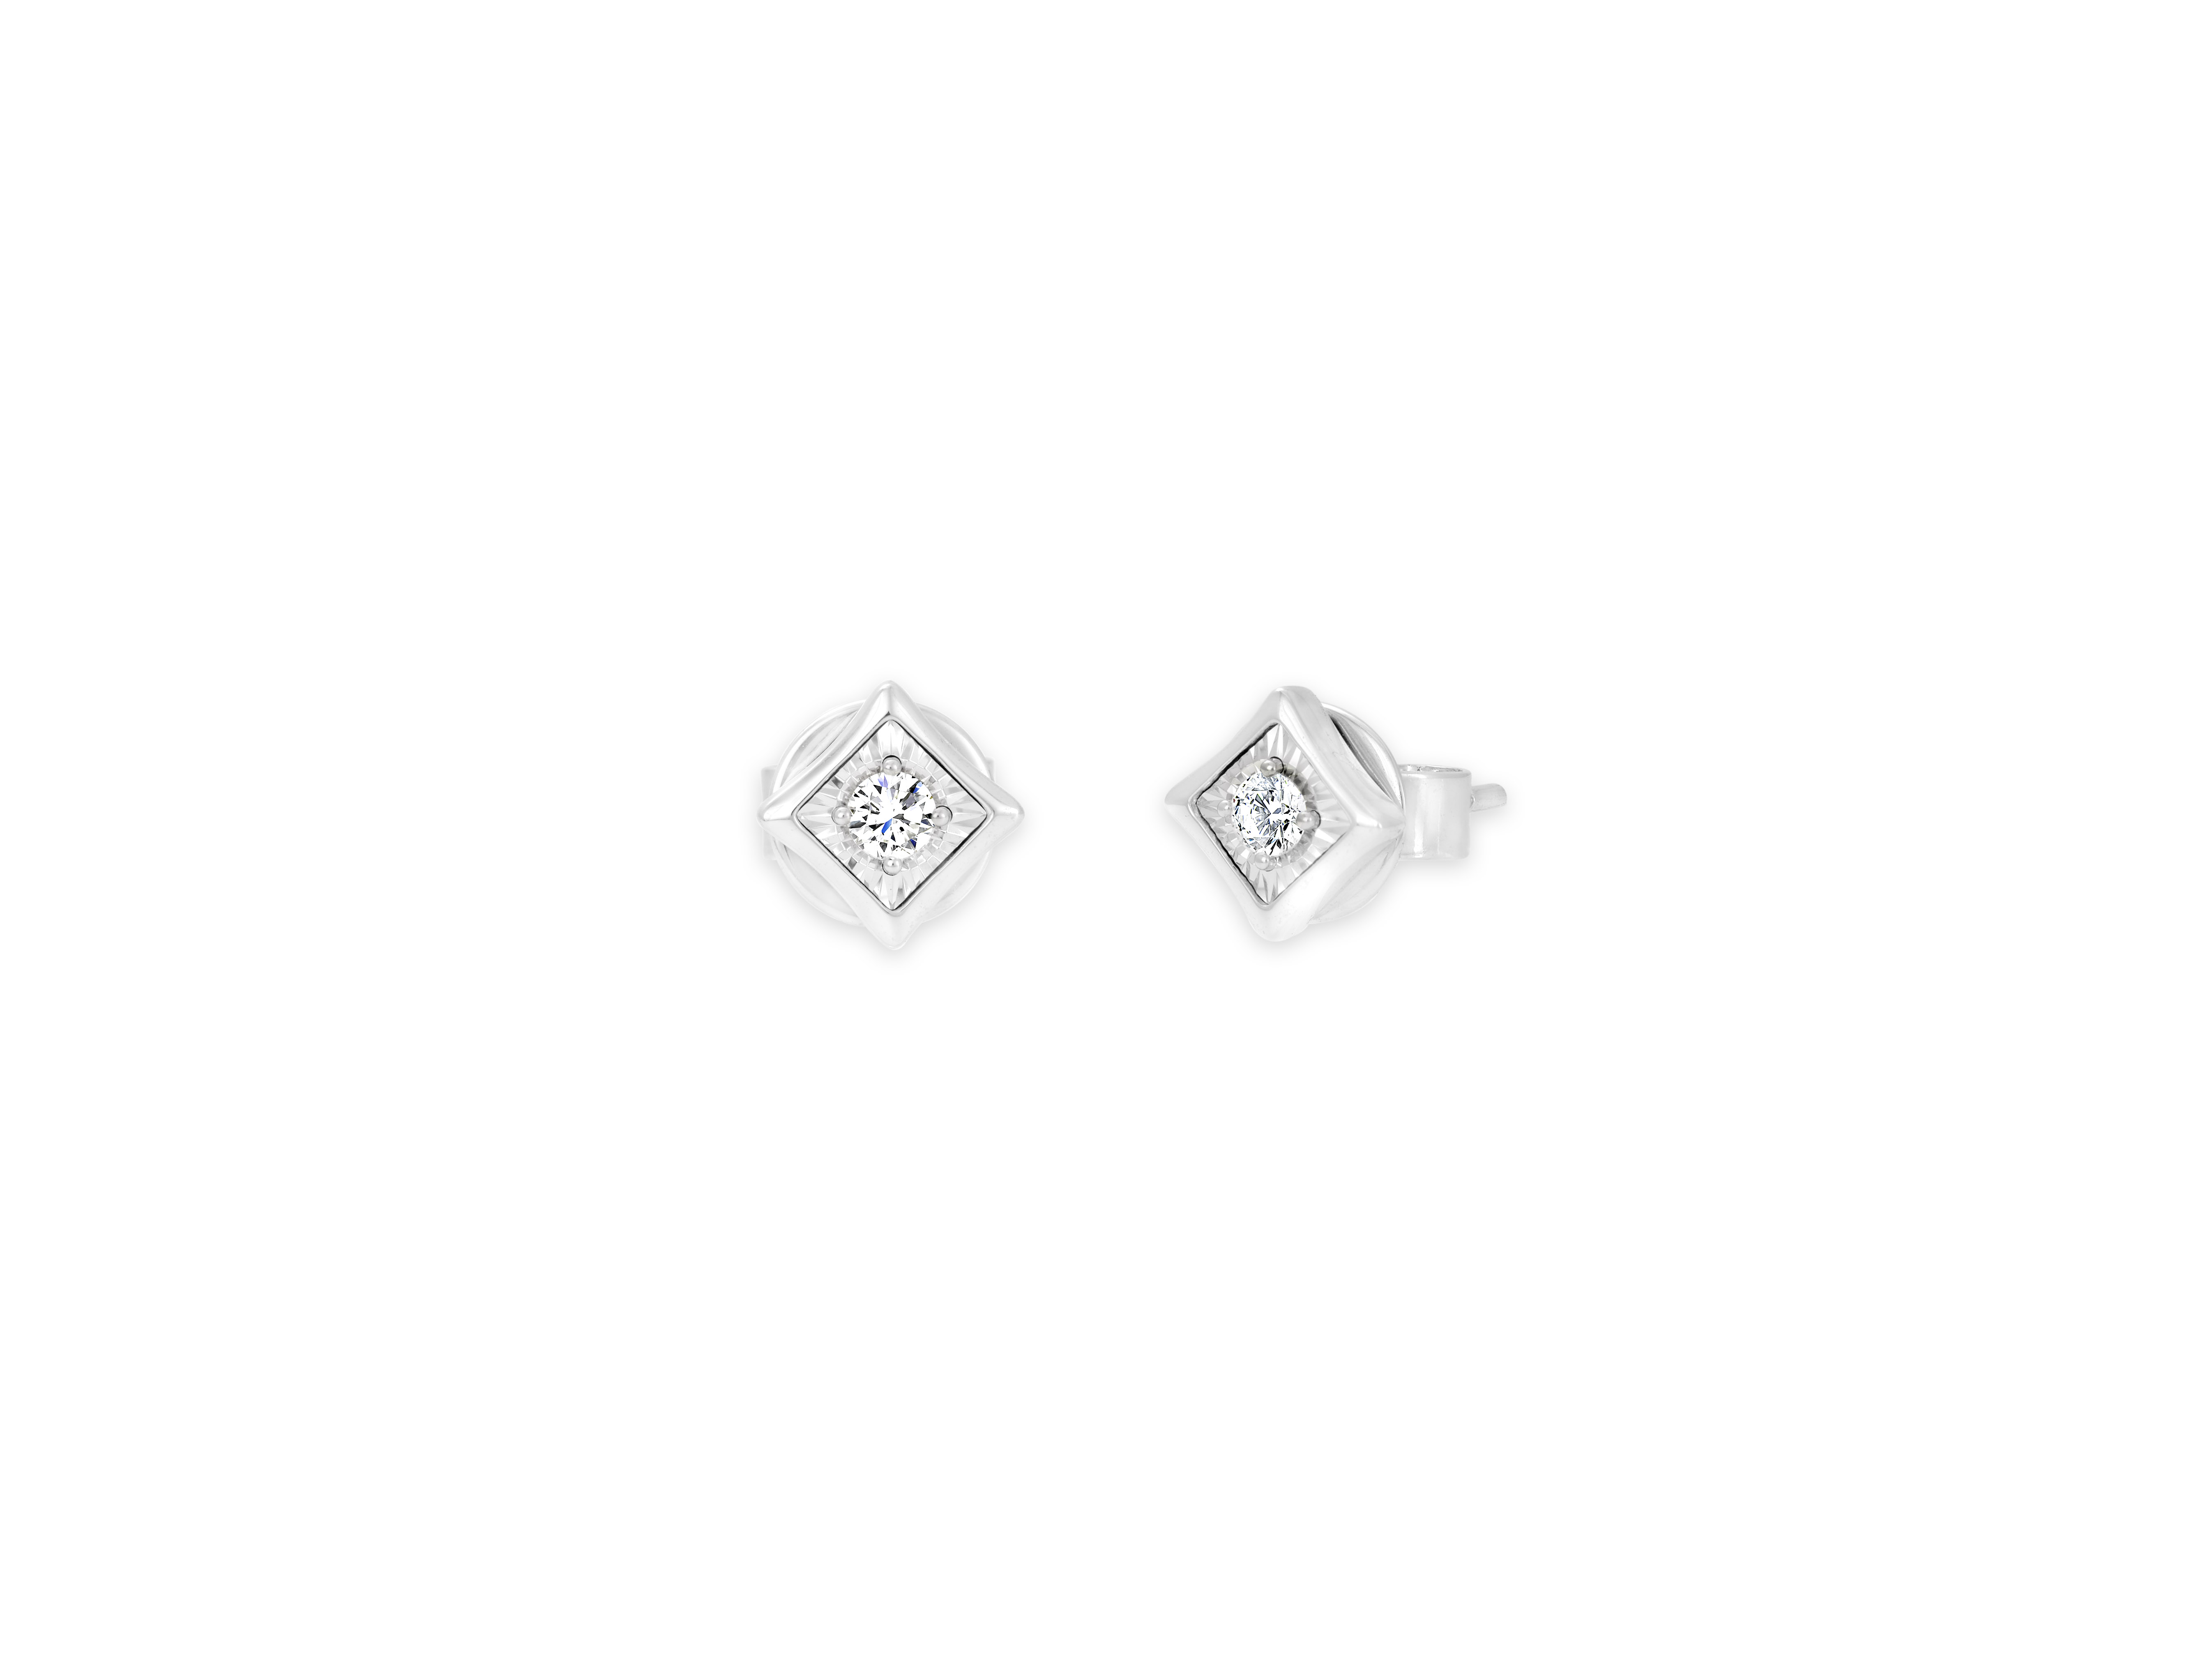 ENCORE - 18K白色及電黑黃金<br />
鑽石單耳環 (疊戴款式)